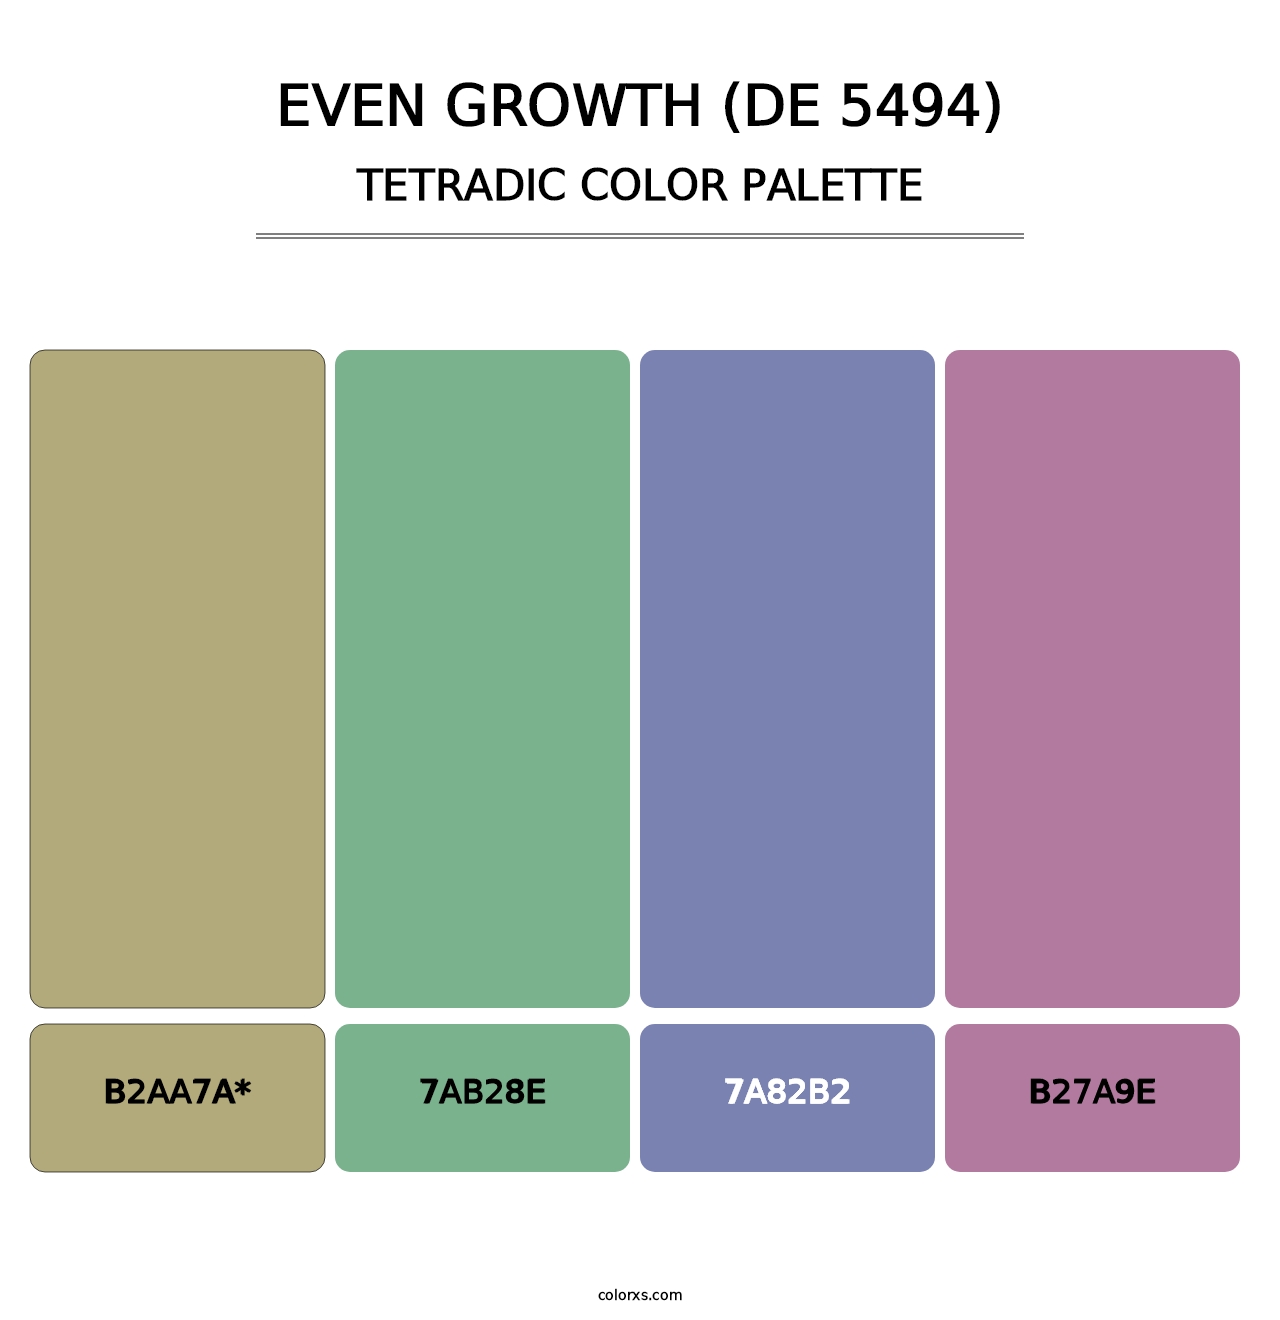 Even Growth (DE 5494) - Tetradic Color Palette